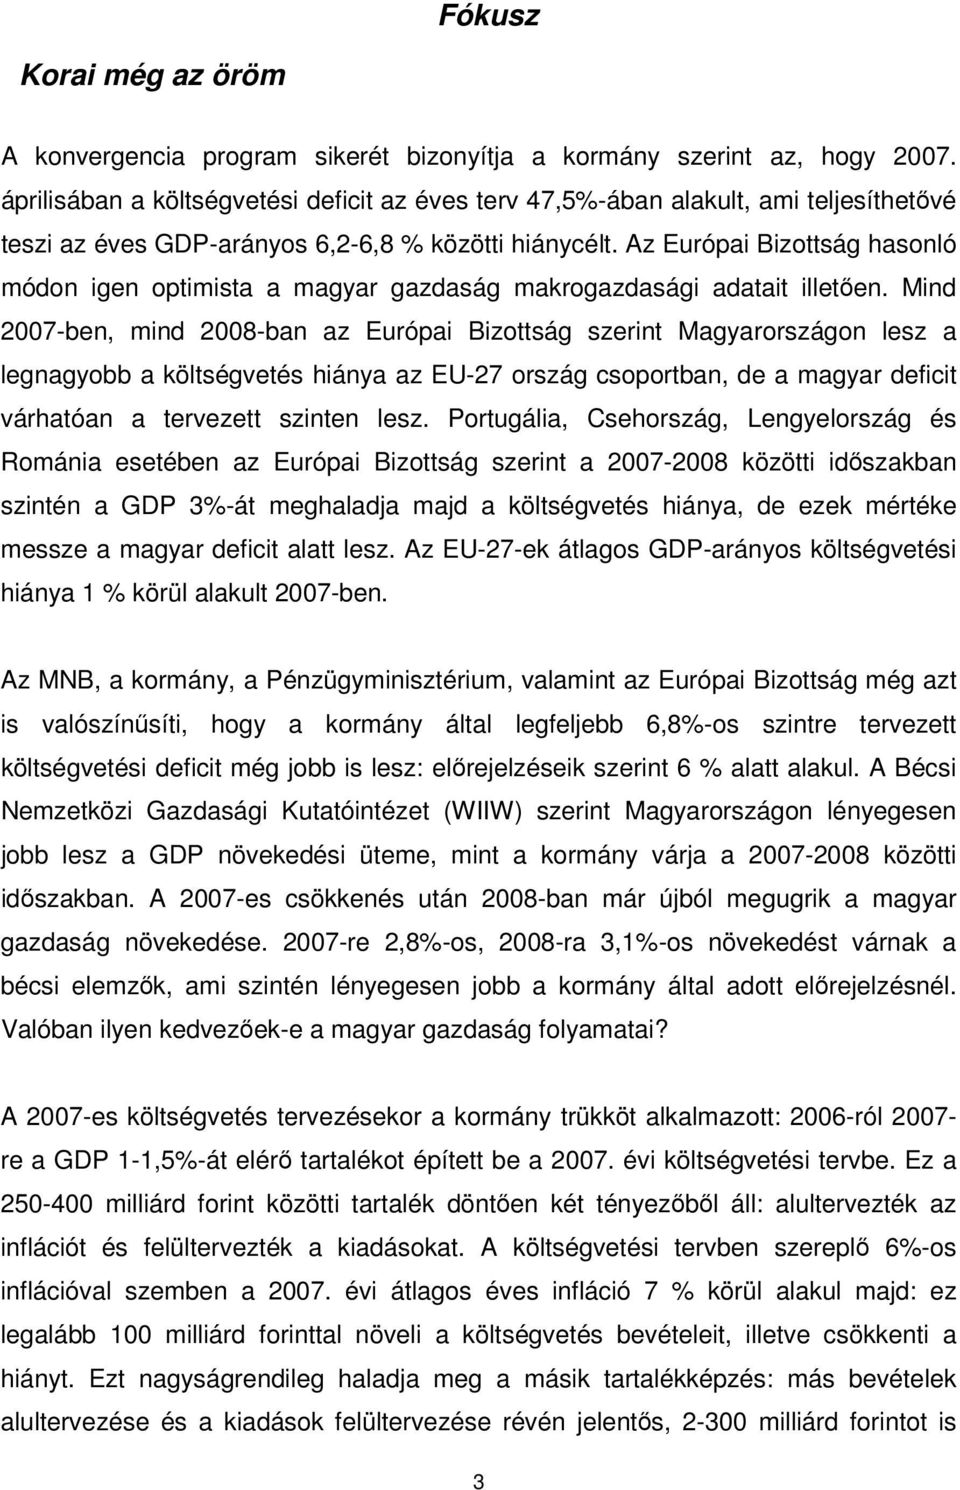 Az Európai Bizottság hasonló módon igen optimista a magyar gazdaság makrogazdasági adatait illetıen.